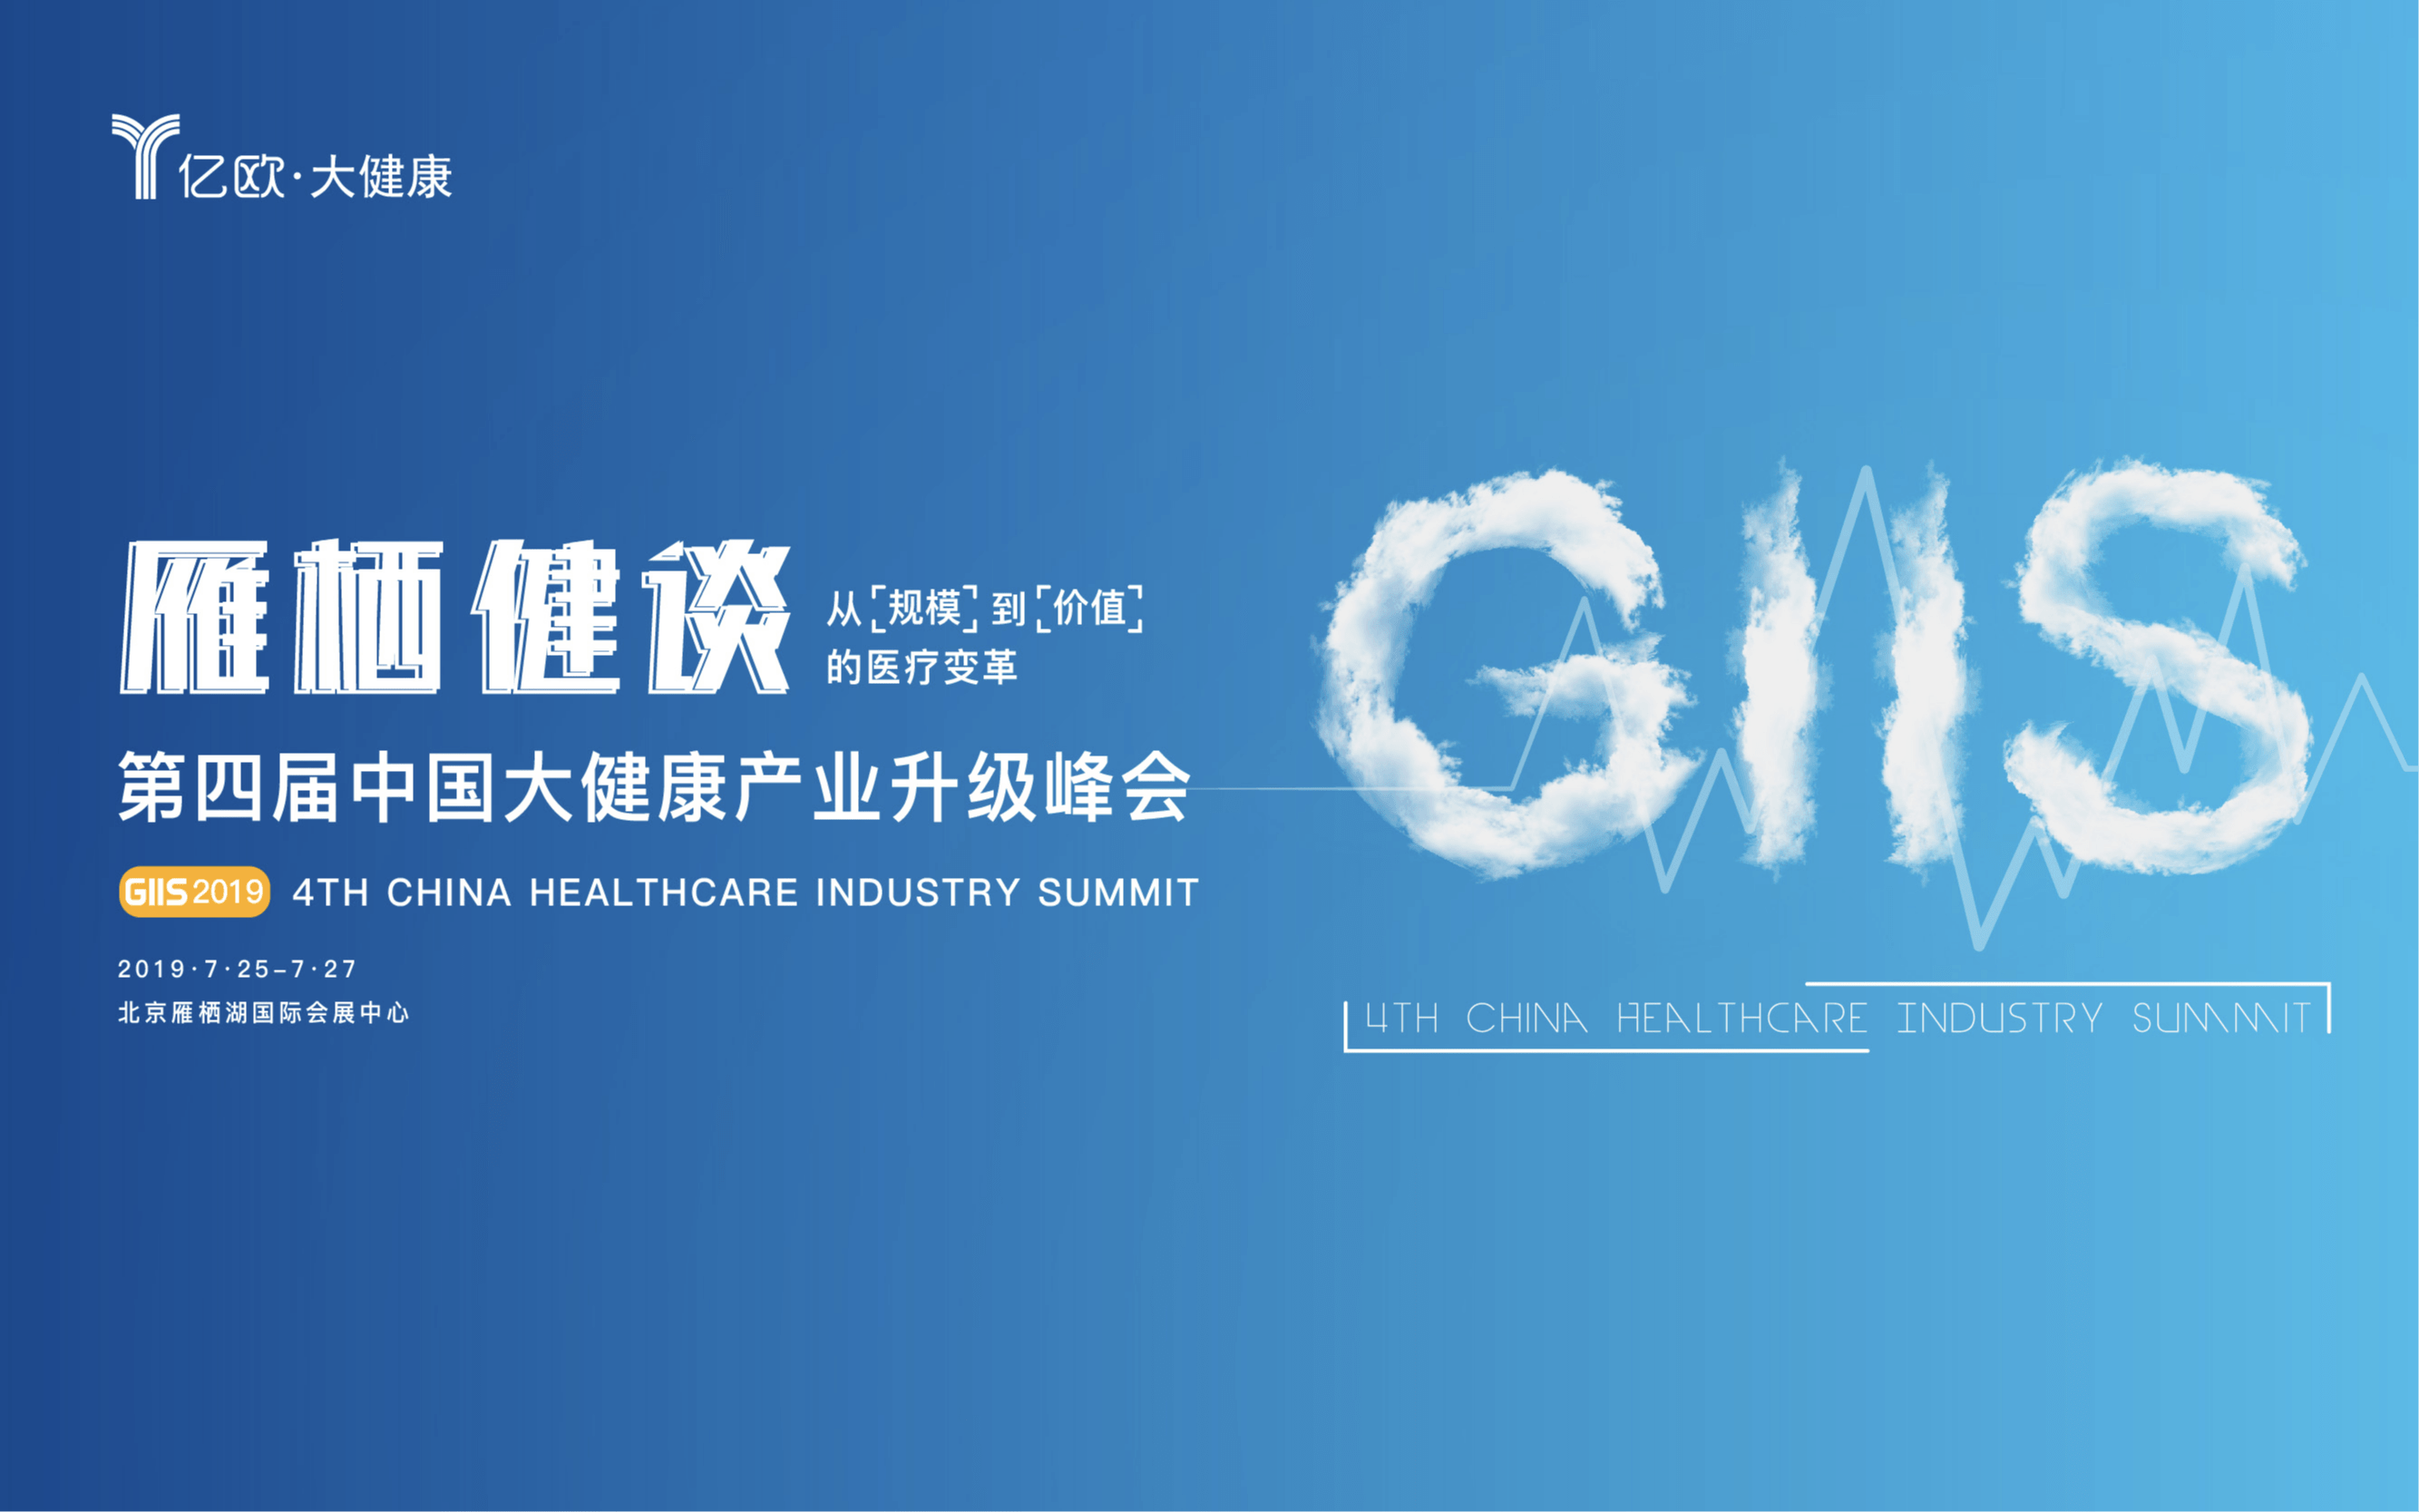 雁栖健谈 GIIS 2019第四届中国大健康产业升级峰会（北京）